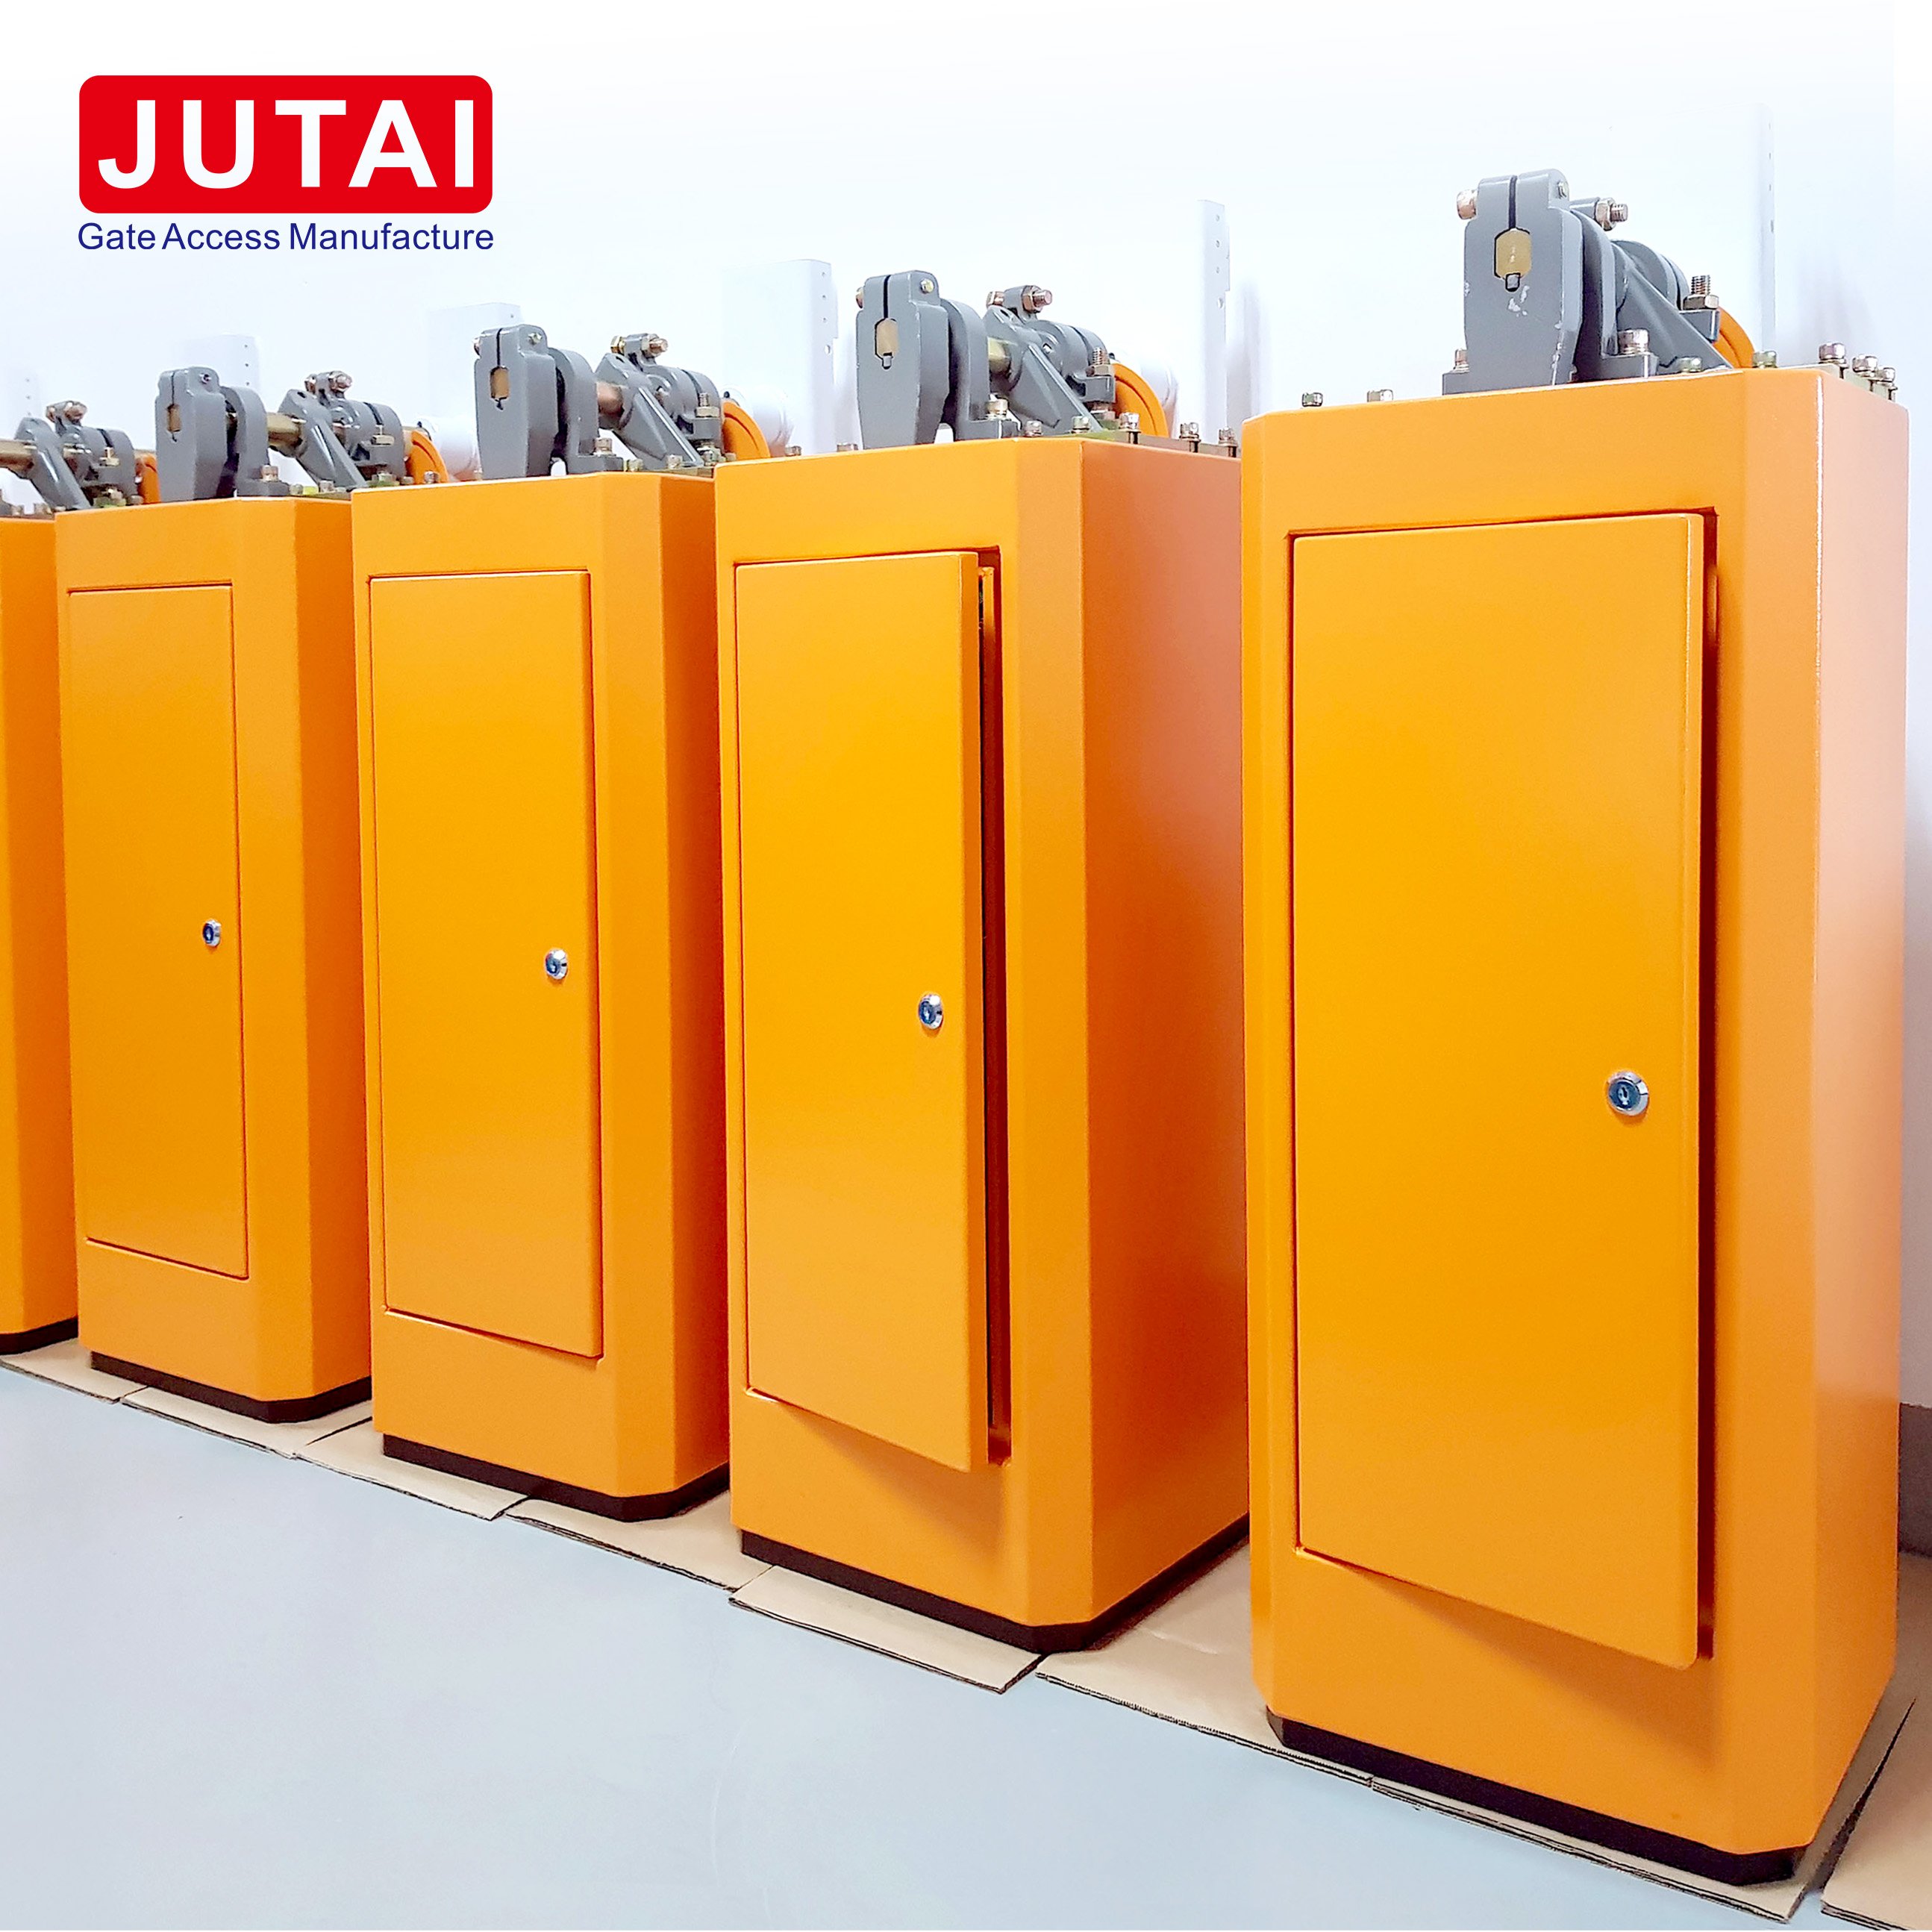 يعمل مشغل بوابة الحاجز التلقائي JUTAI مع ثلاثة أزرار دفع JUTAI لفتح / إيقاف / إغلاق